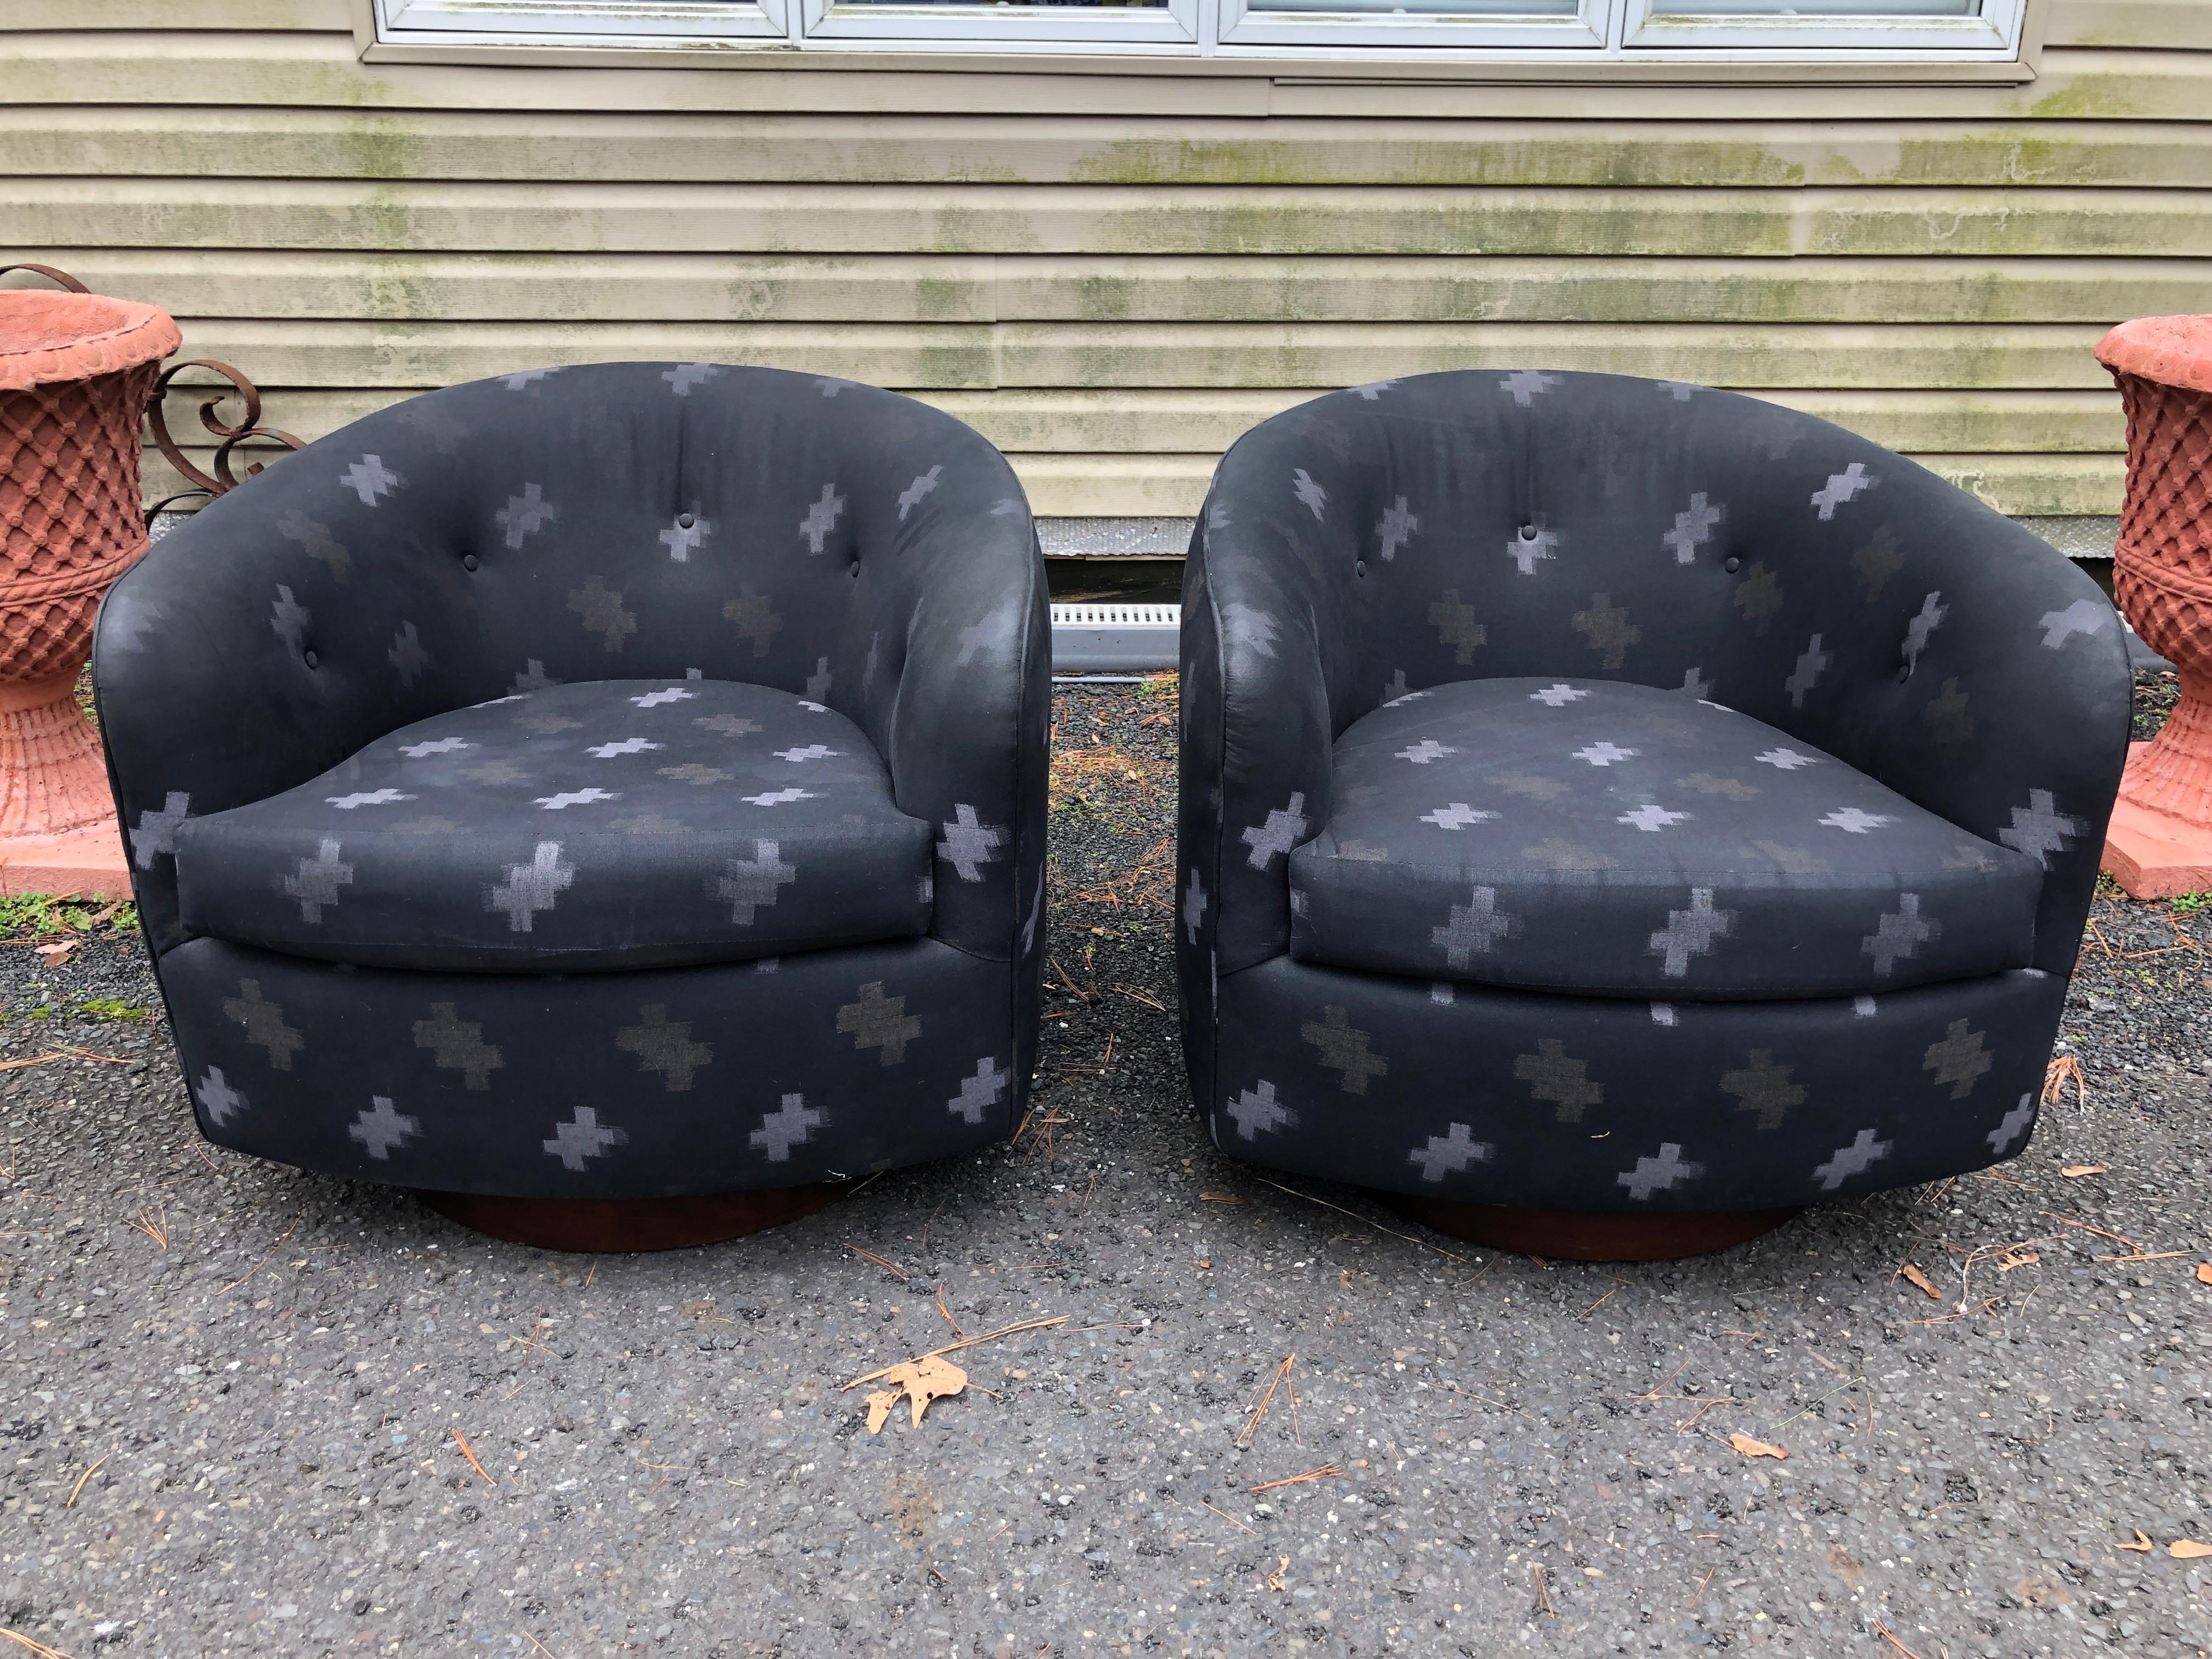 Fabelhaftes Paar Milo Baughman für Thayer Coggin drehbare Rocker Lounge Stühle.  Dieses Paar muss neu gepolstert werden, aber das ist es doch, was ihr Designer wollt, oder?  Sie schwingen und schaukeln und sind sehr bequem. Sie messen 26 